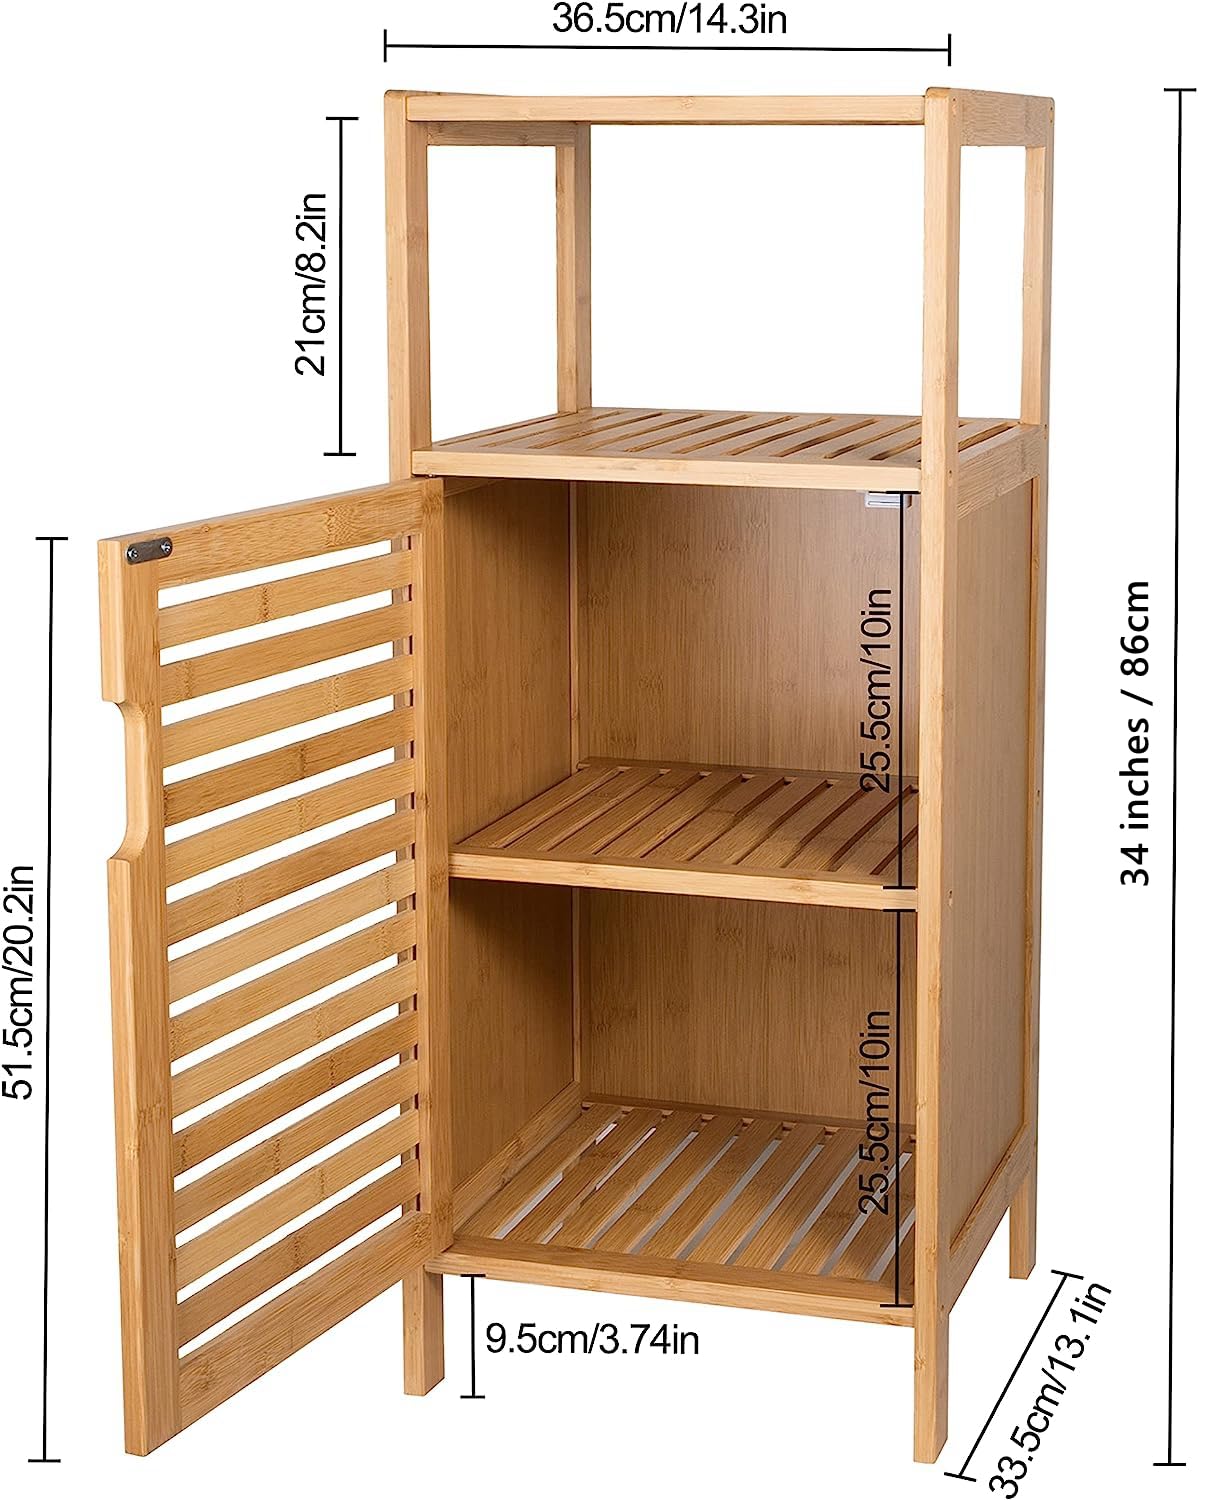 Purbambo Bathroom Bamboo Storage Cabinet, Freestanding Floor Cabinet with Door and Shelf for Bathroom, Living Room, Bedroom, Hallway, Kitchen